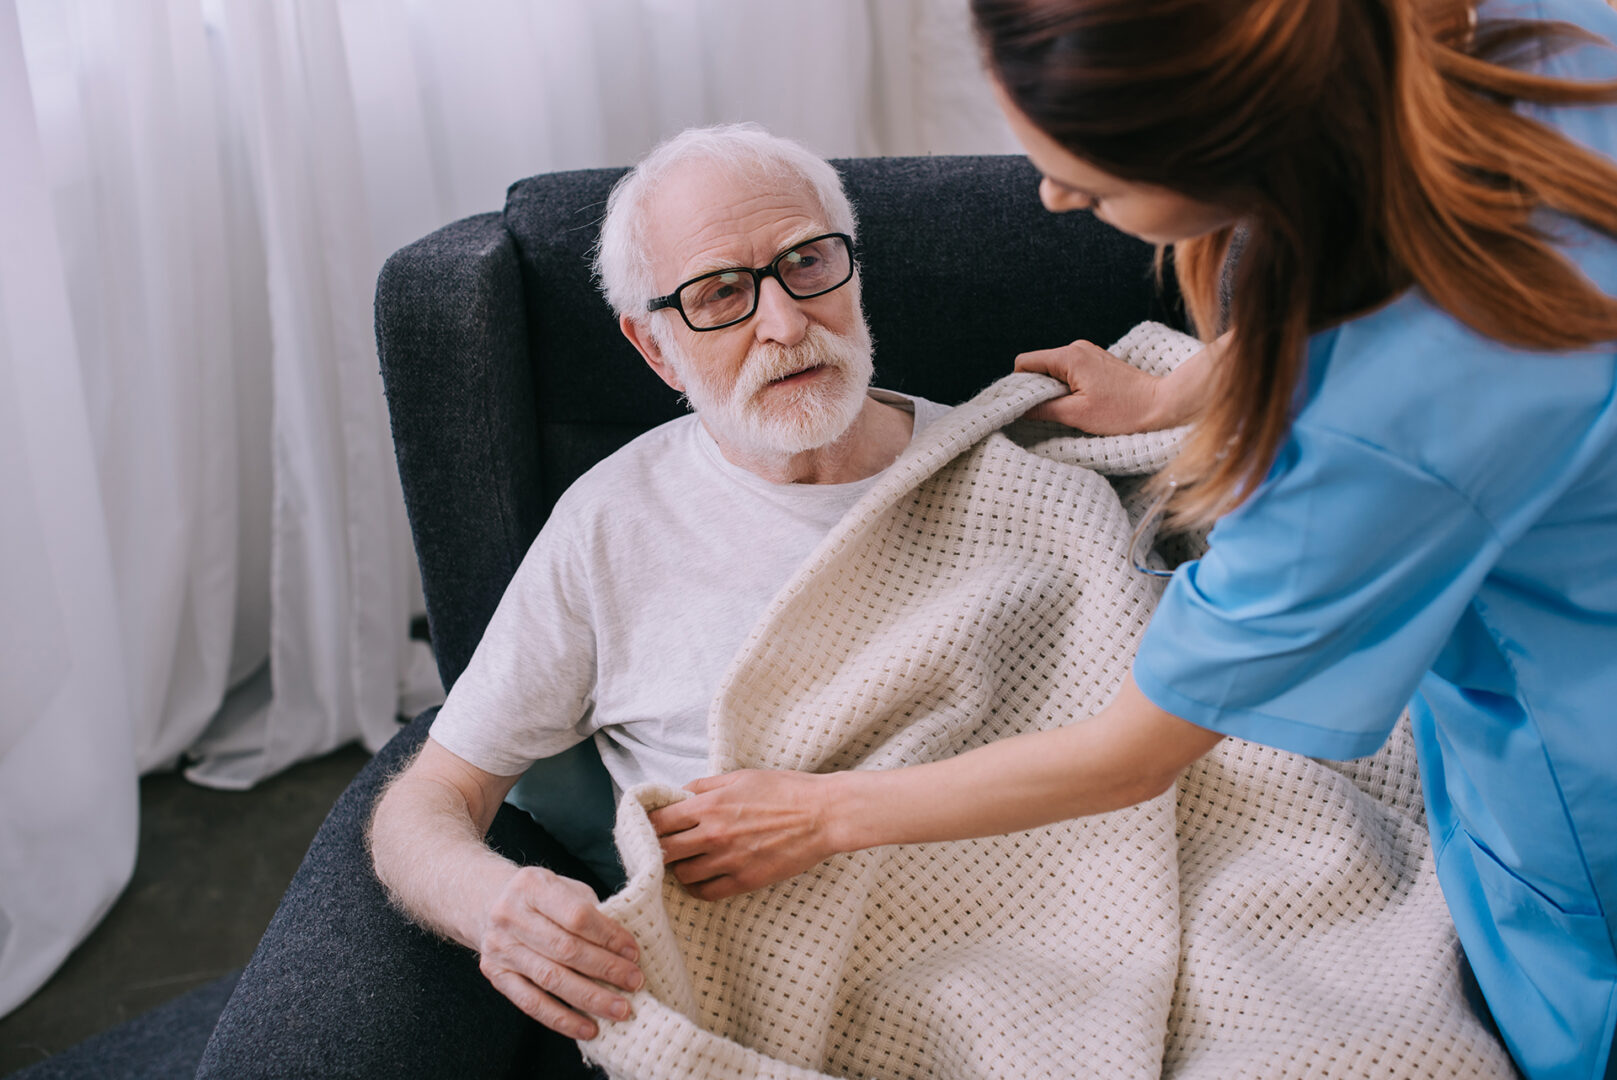 A caregiver helping a senior man